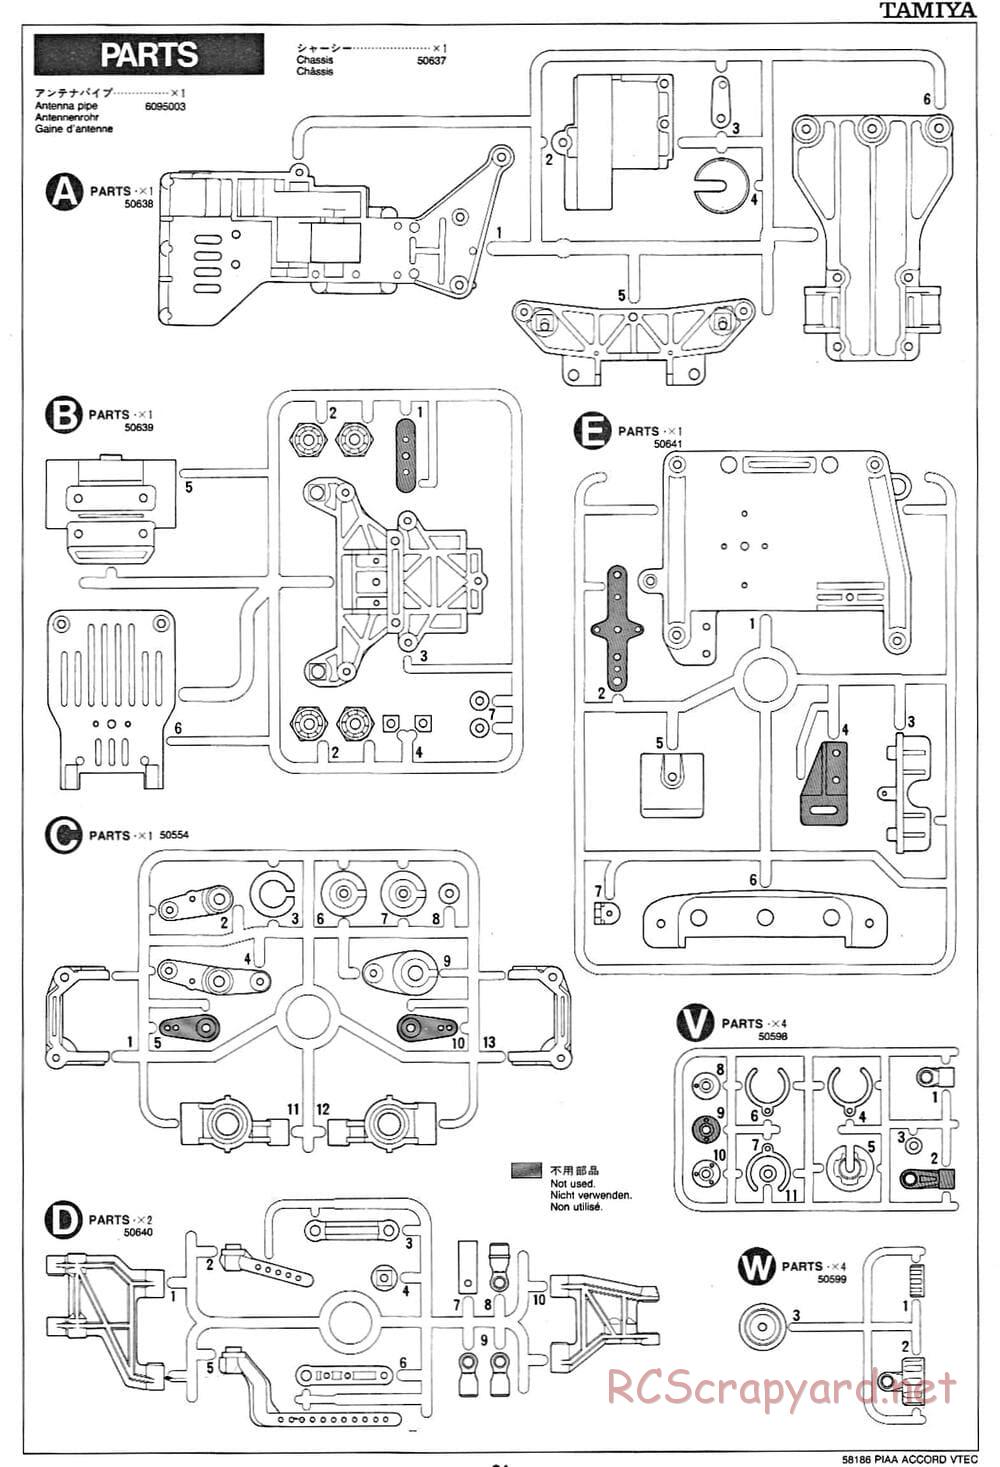 Tamiya - PIAA Accord VTEC - FF-01 Chassis - Manual - Page 21